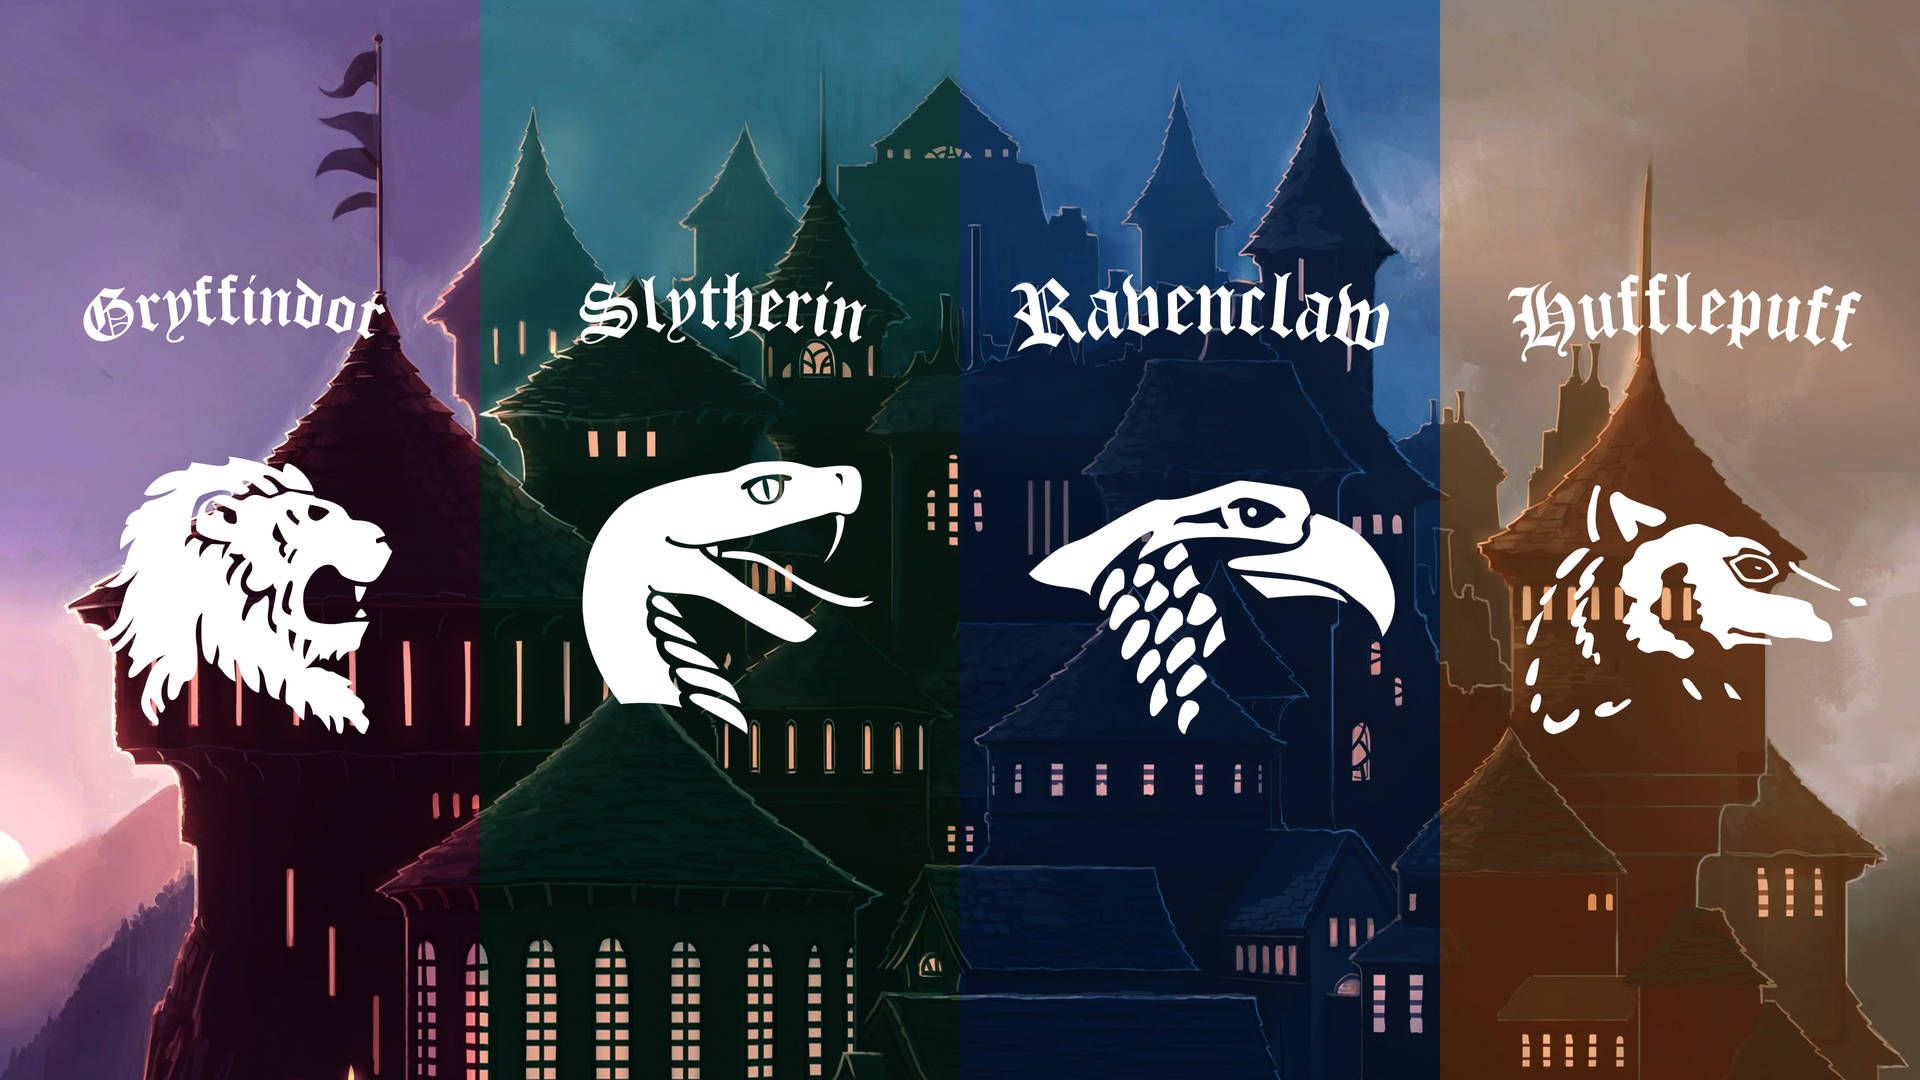 Hogwarts Aesthetic Wallpaper